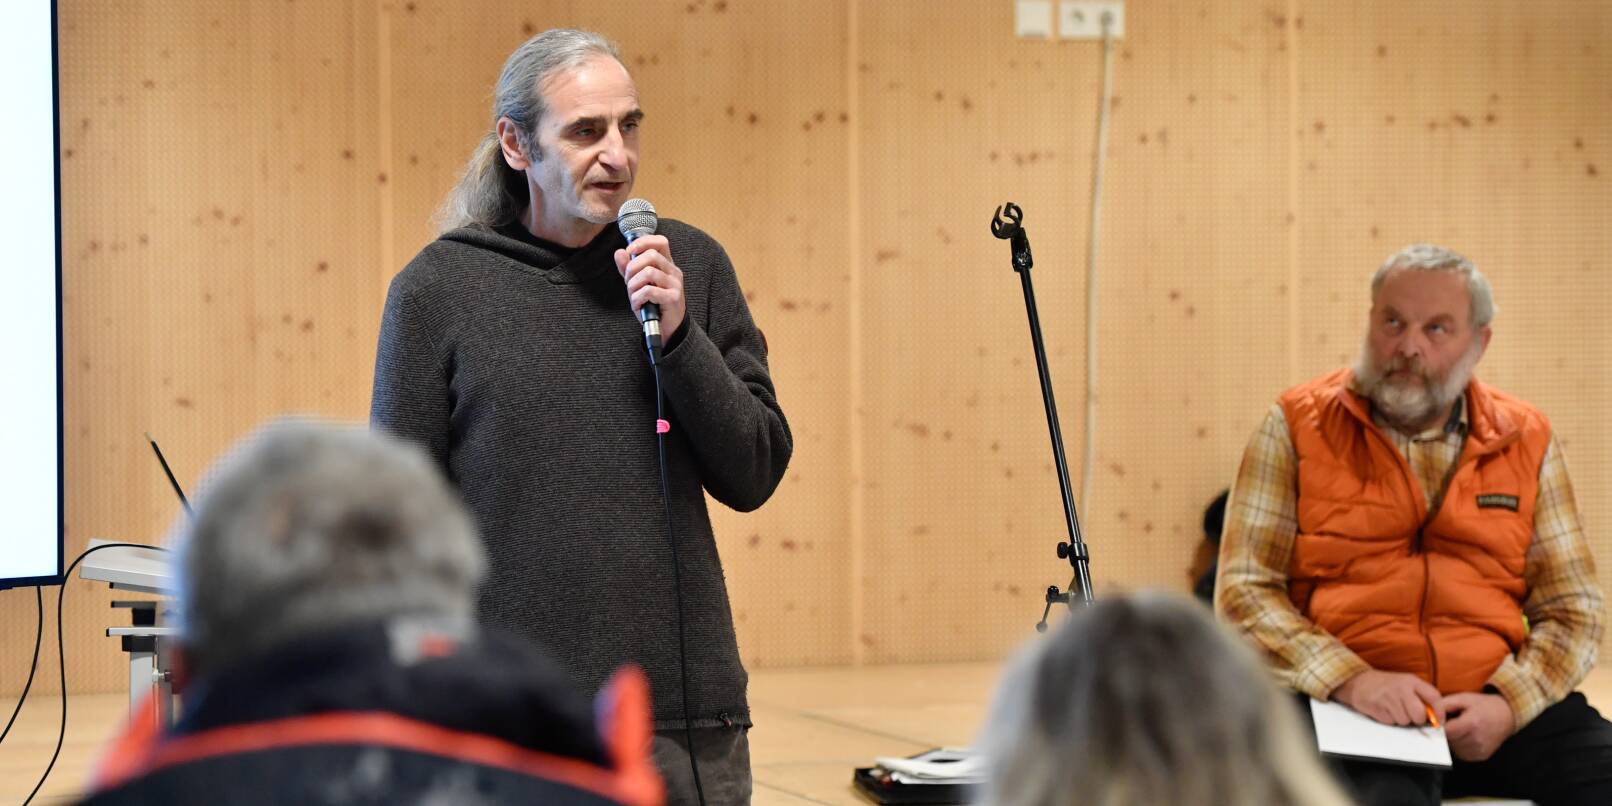 Rainer Herget (am Mikrofon) ist einer der Sprecher der Bürgerinitiative "Naherholung Waidsee", die derzeit Unterschriften gegen die Pläne für ein Parkdeck und ein Hotel am Waidsee sammelt.